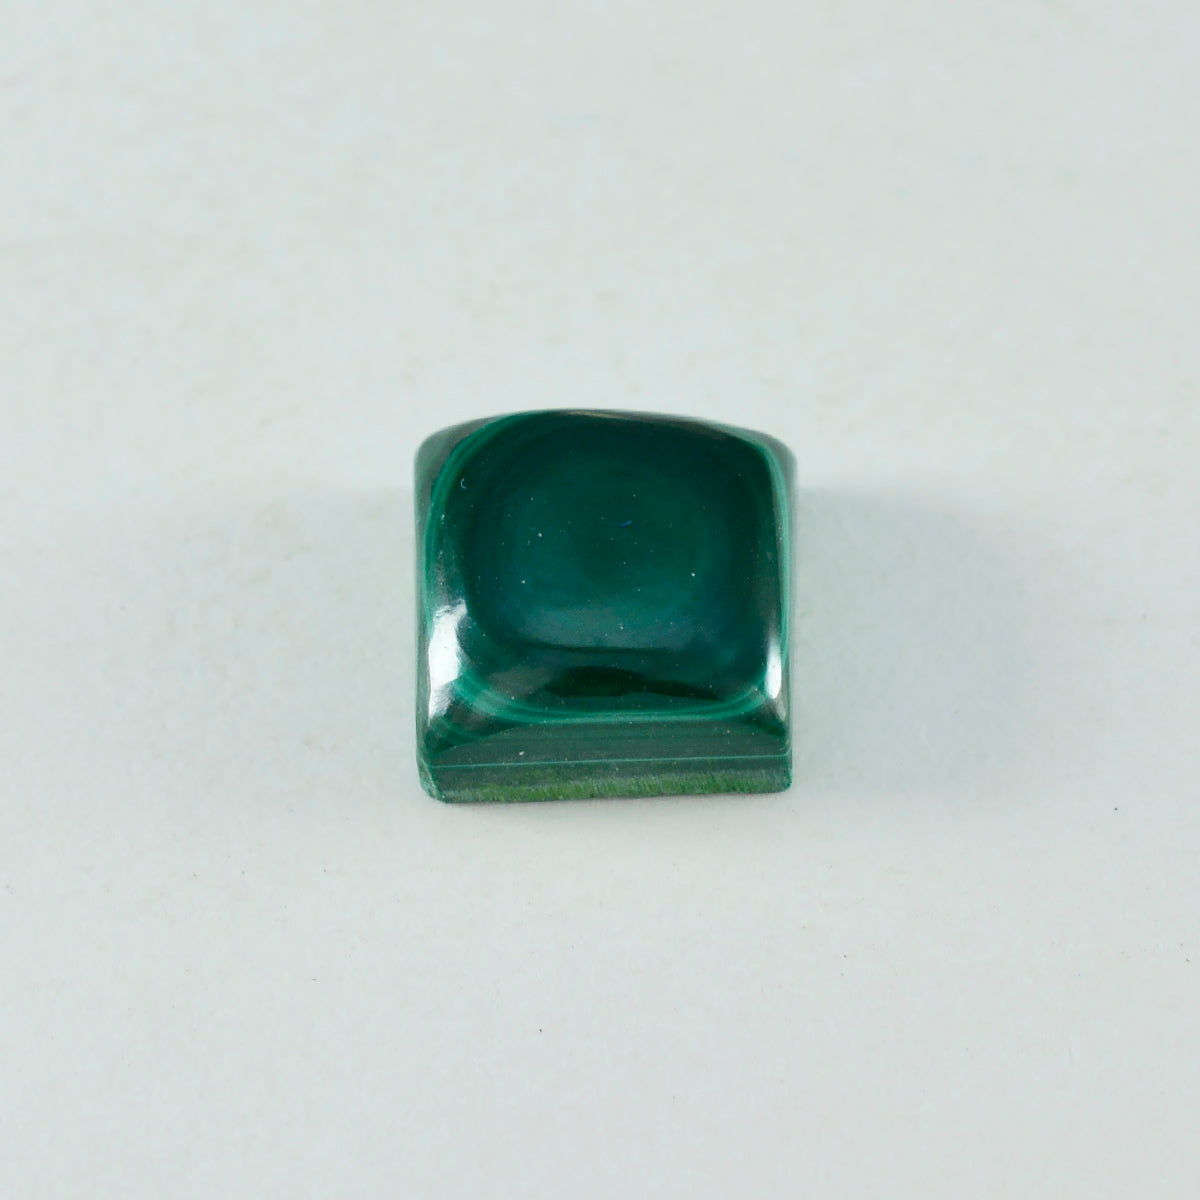 riyogems 1 pieza cabujón de malaquita verde 13x13 mm forma cuadrada a+1 piedra preciosa suelta de calidad